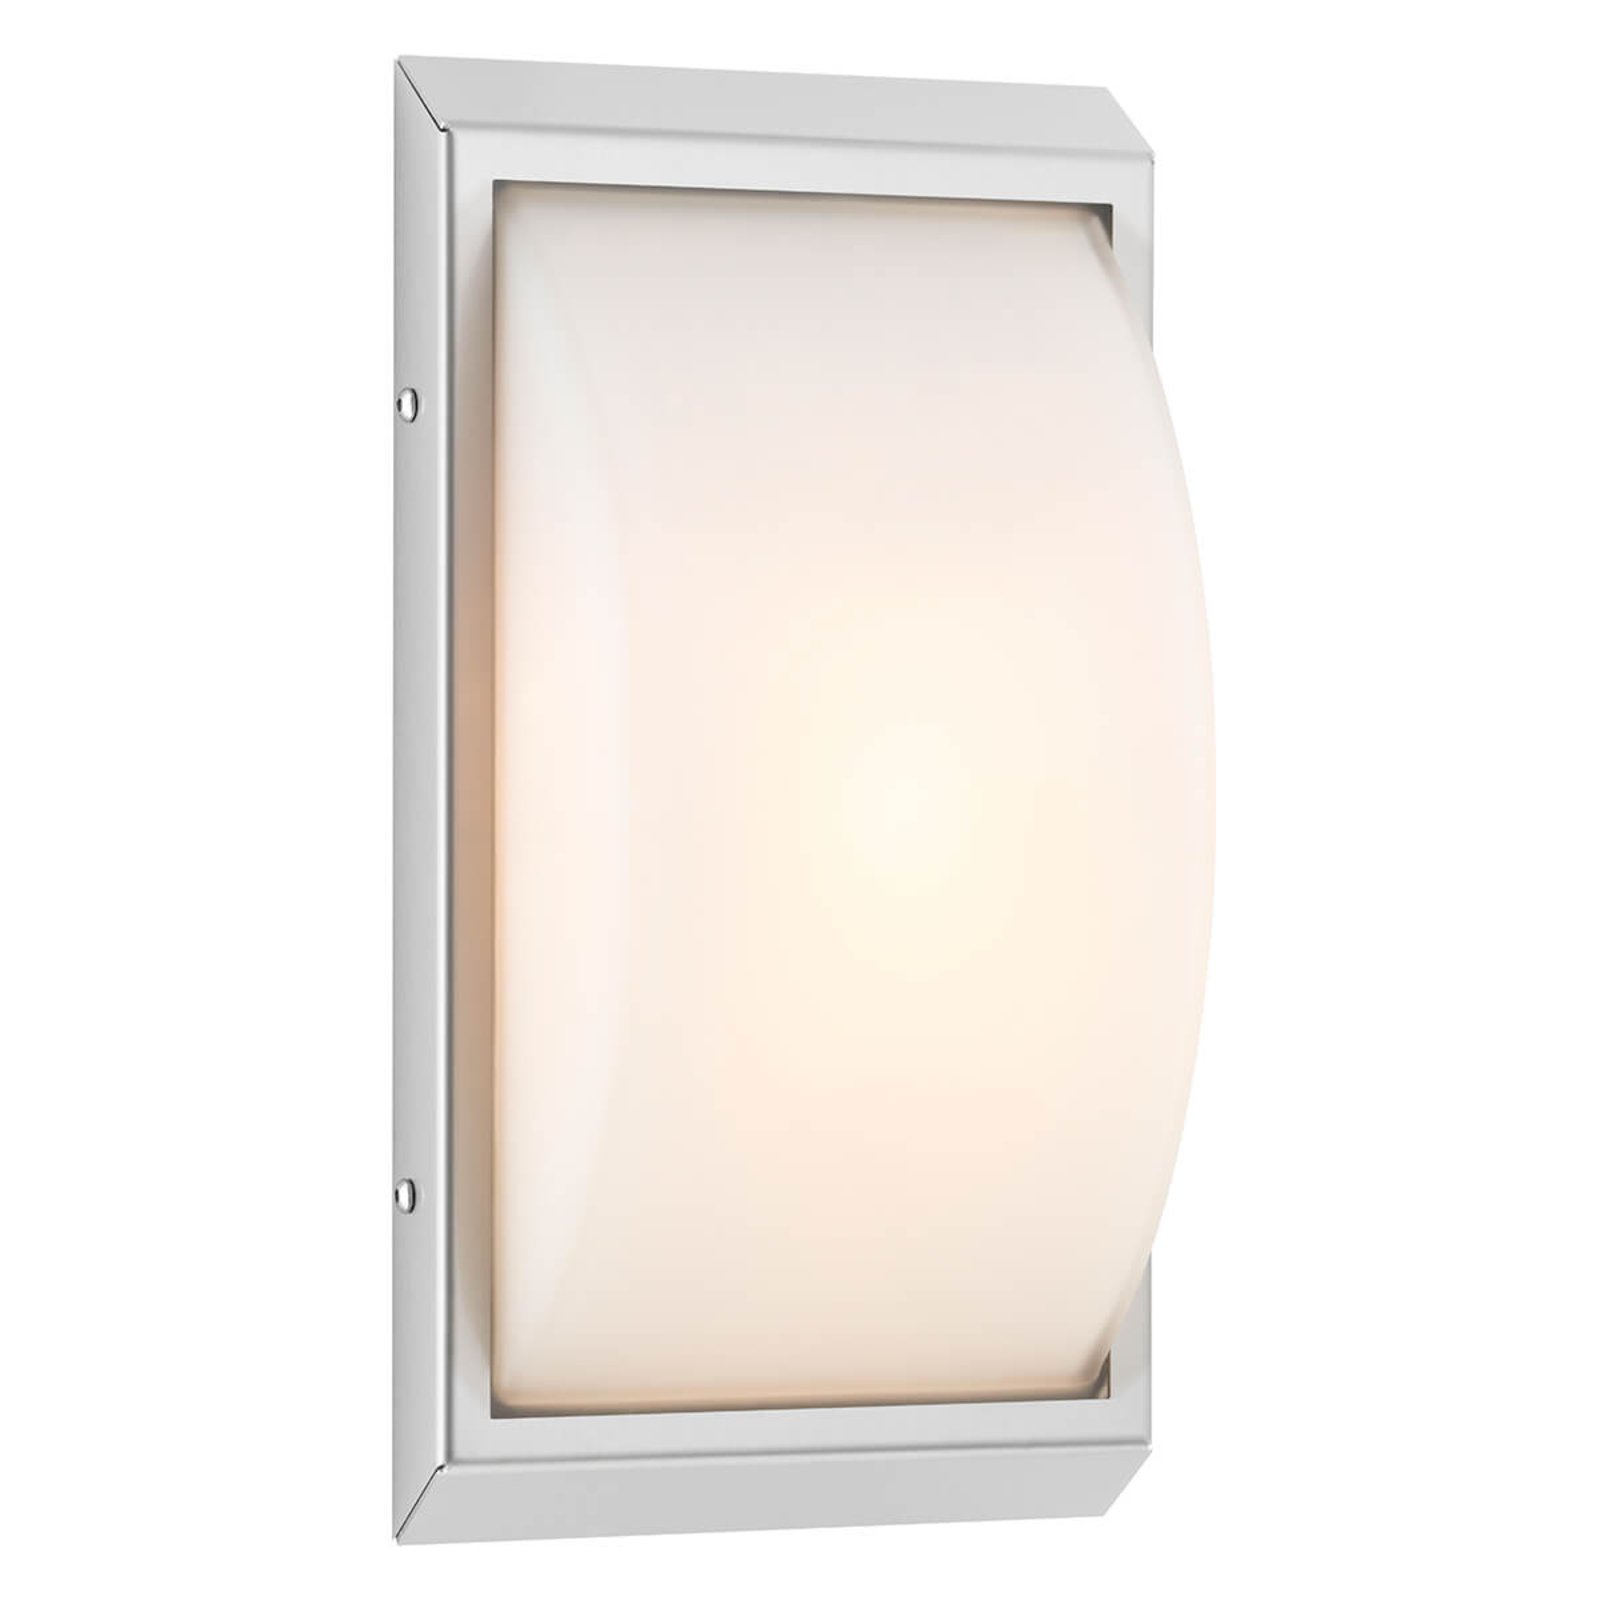 Висококачествена външна LED светлина за стена 052 w. Сензор